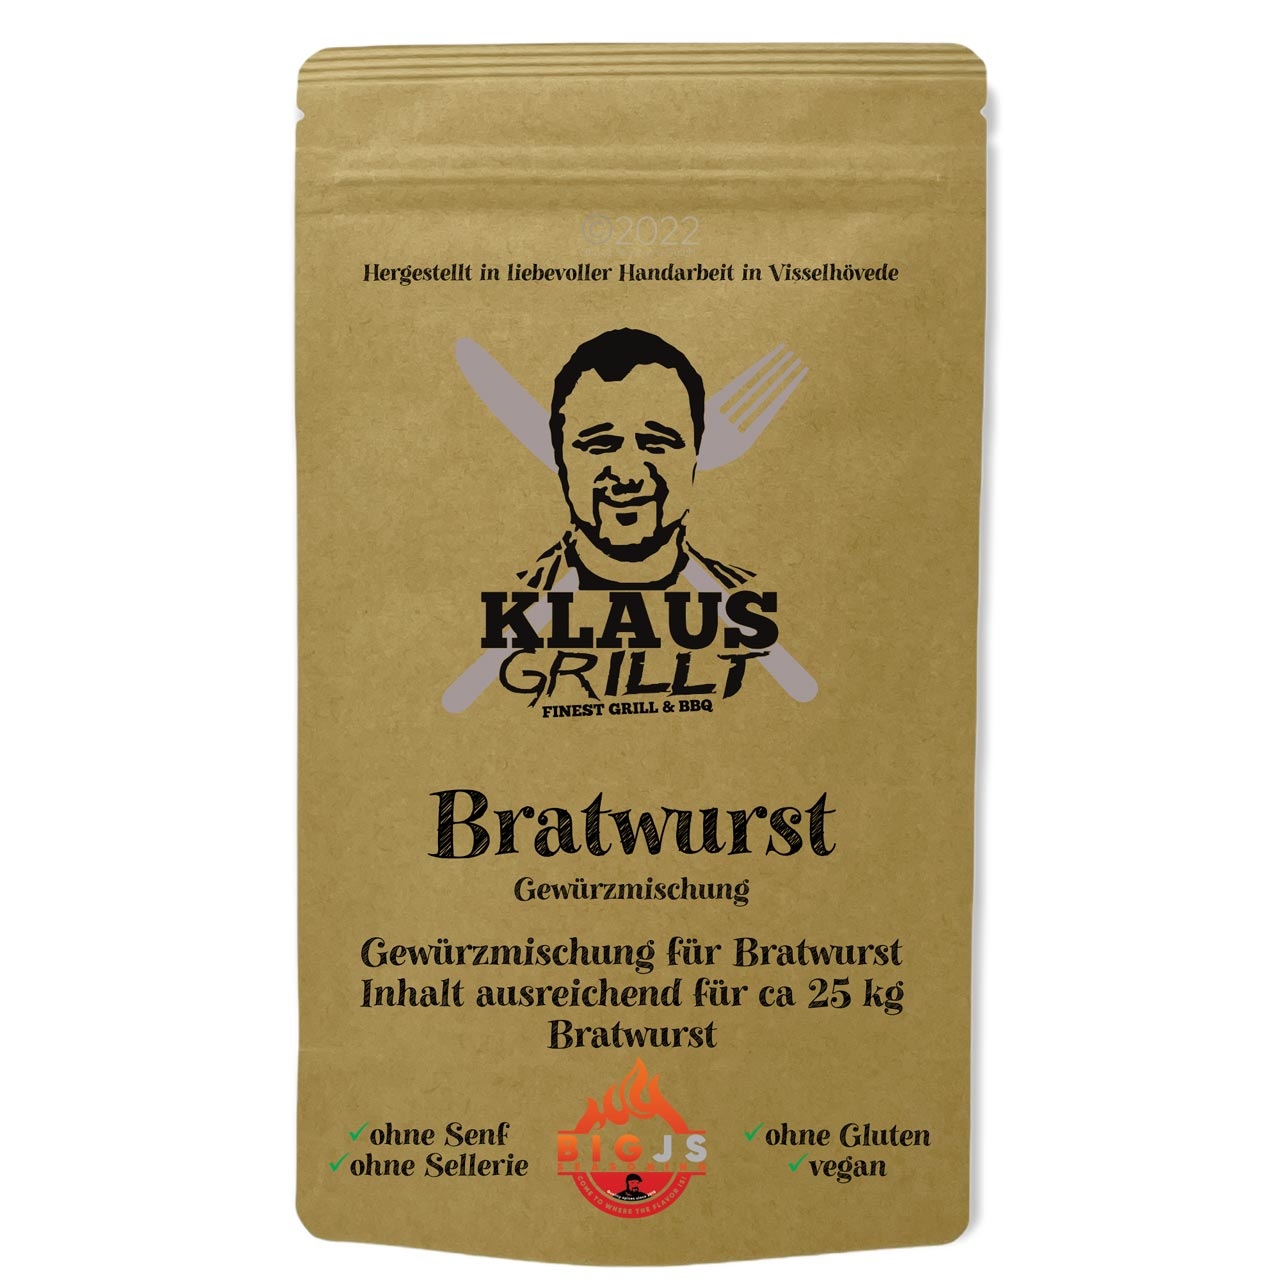 Klaus Grillt - Bratwurst Gewürzmischung 150g Beutel